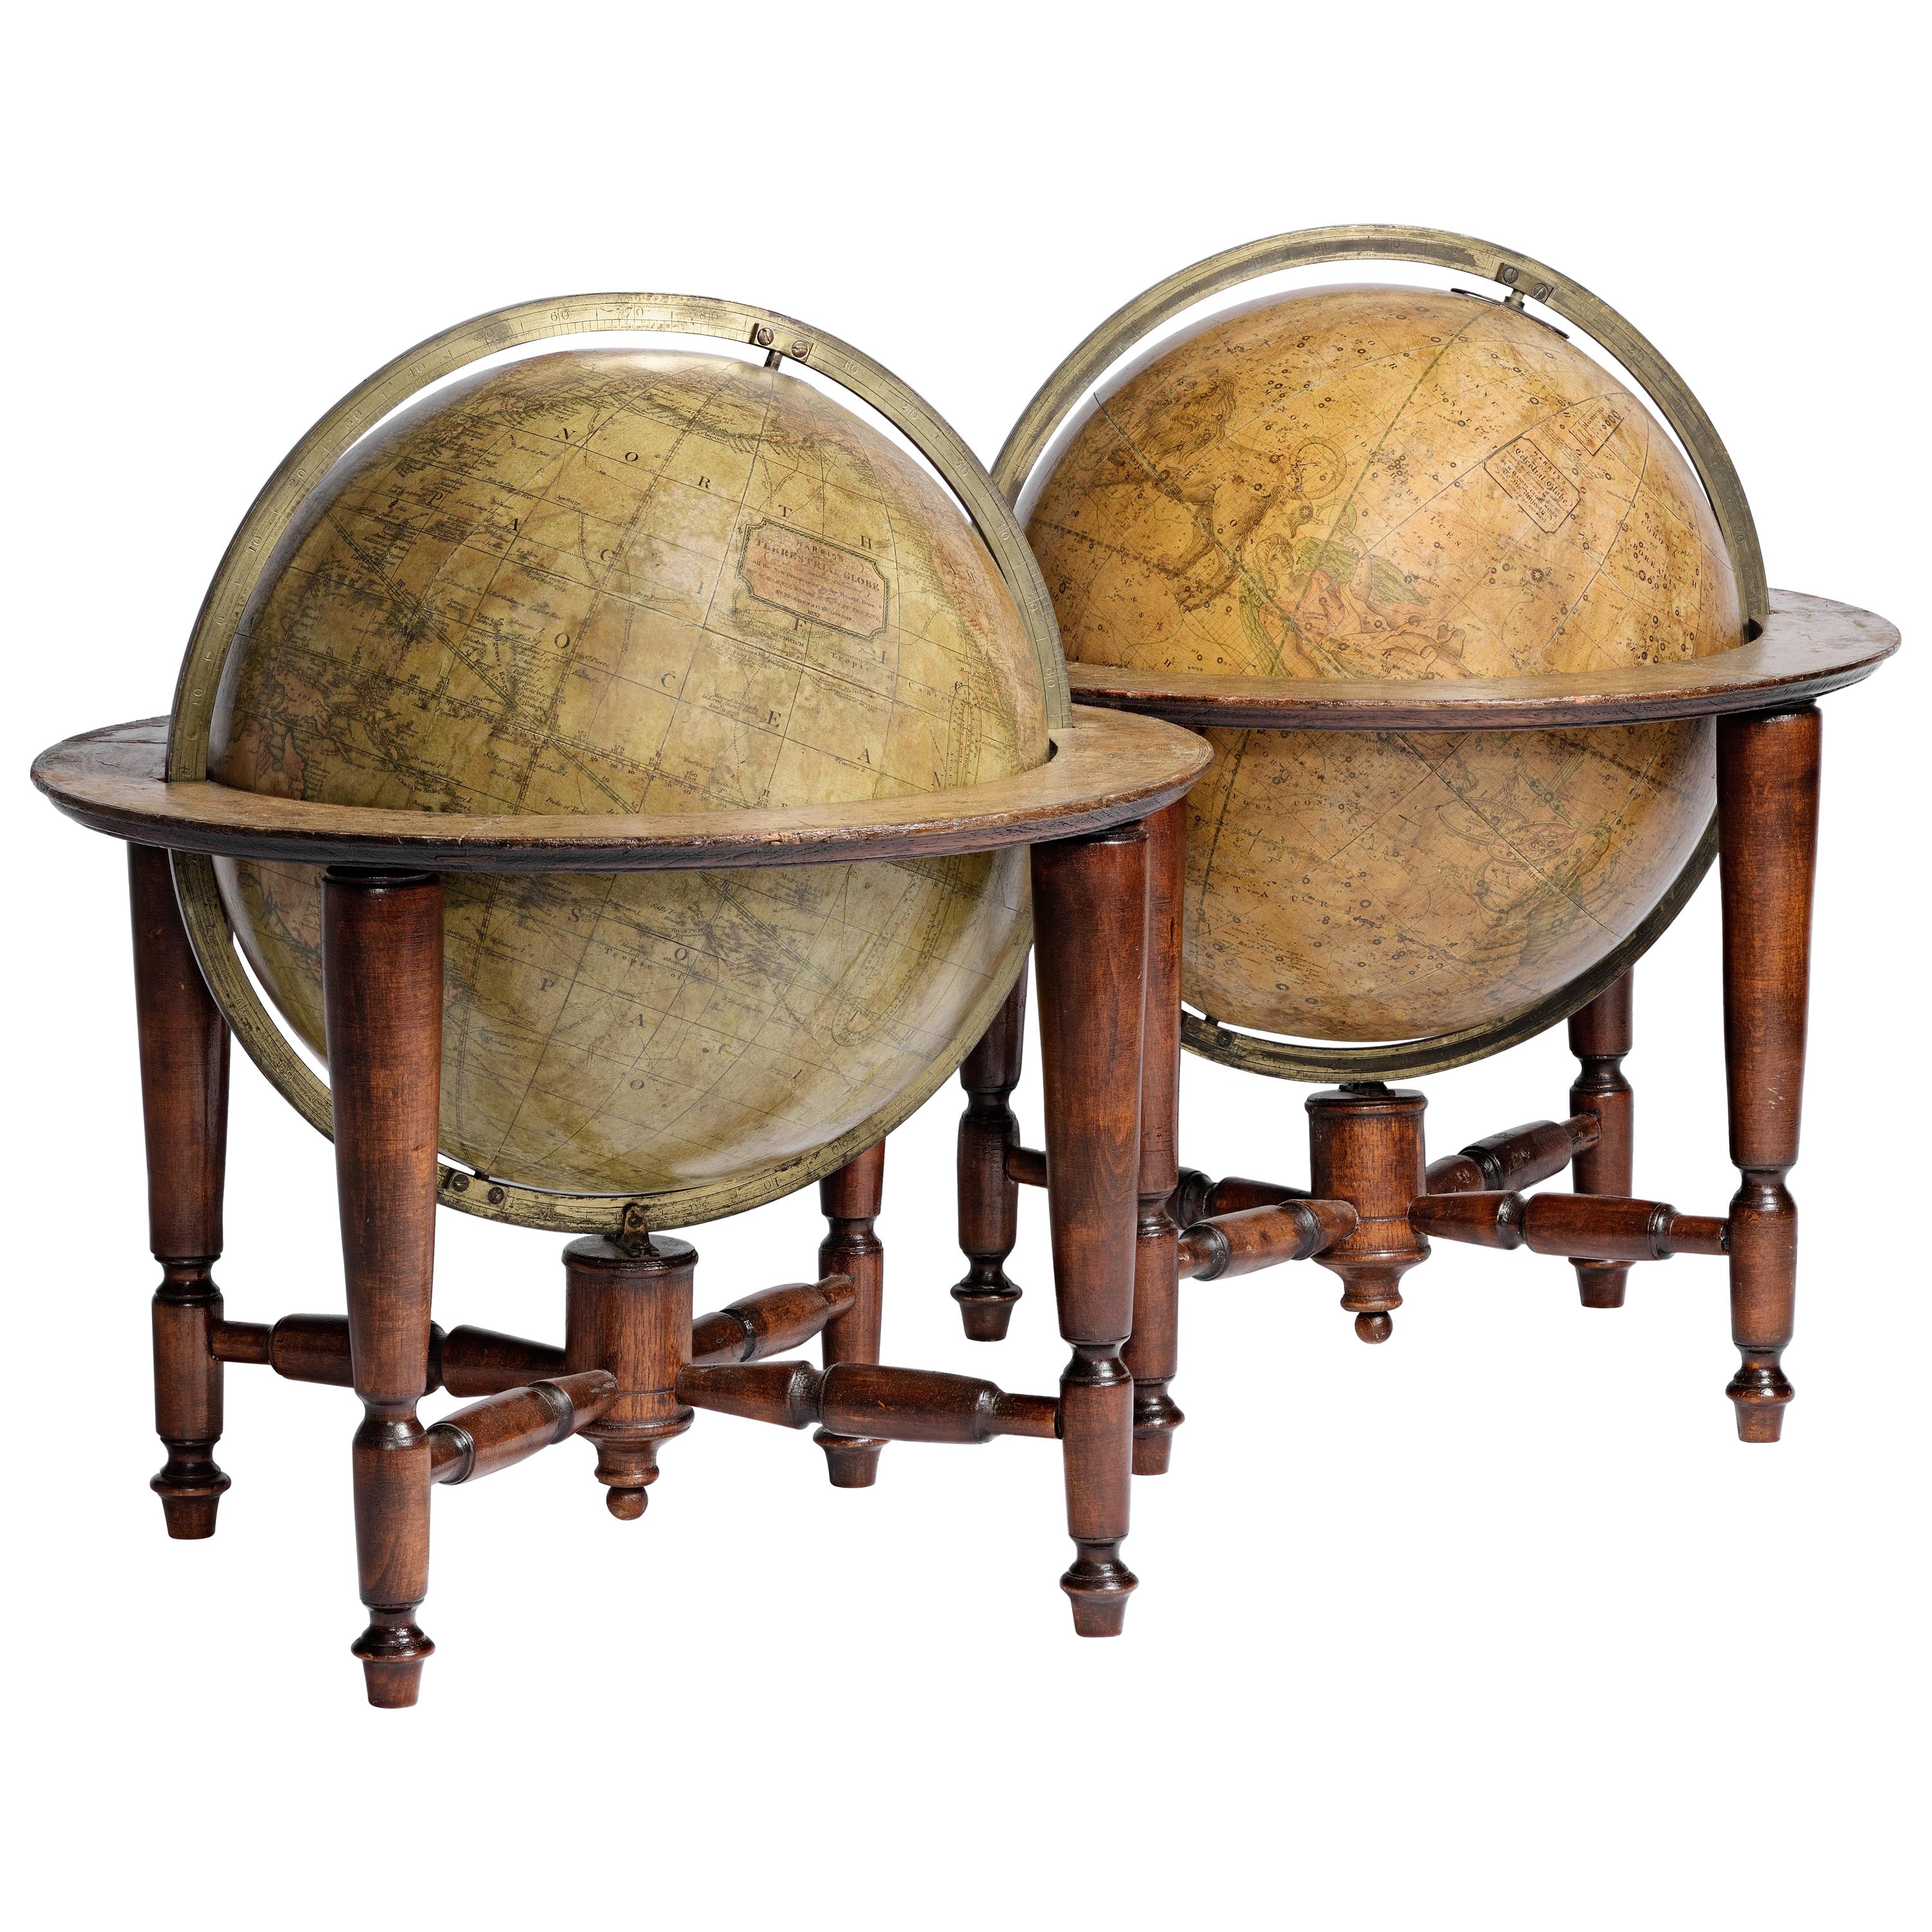 Paire de globes anglais de 12 pouces de diamètre par William Harris, Londres, 1832 et 1835